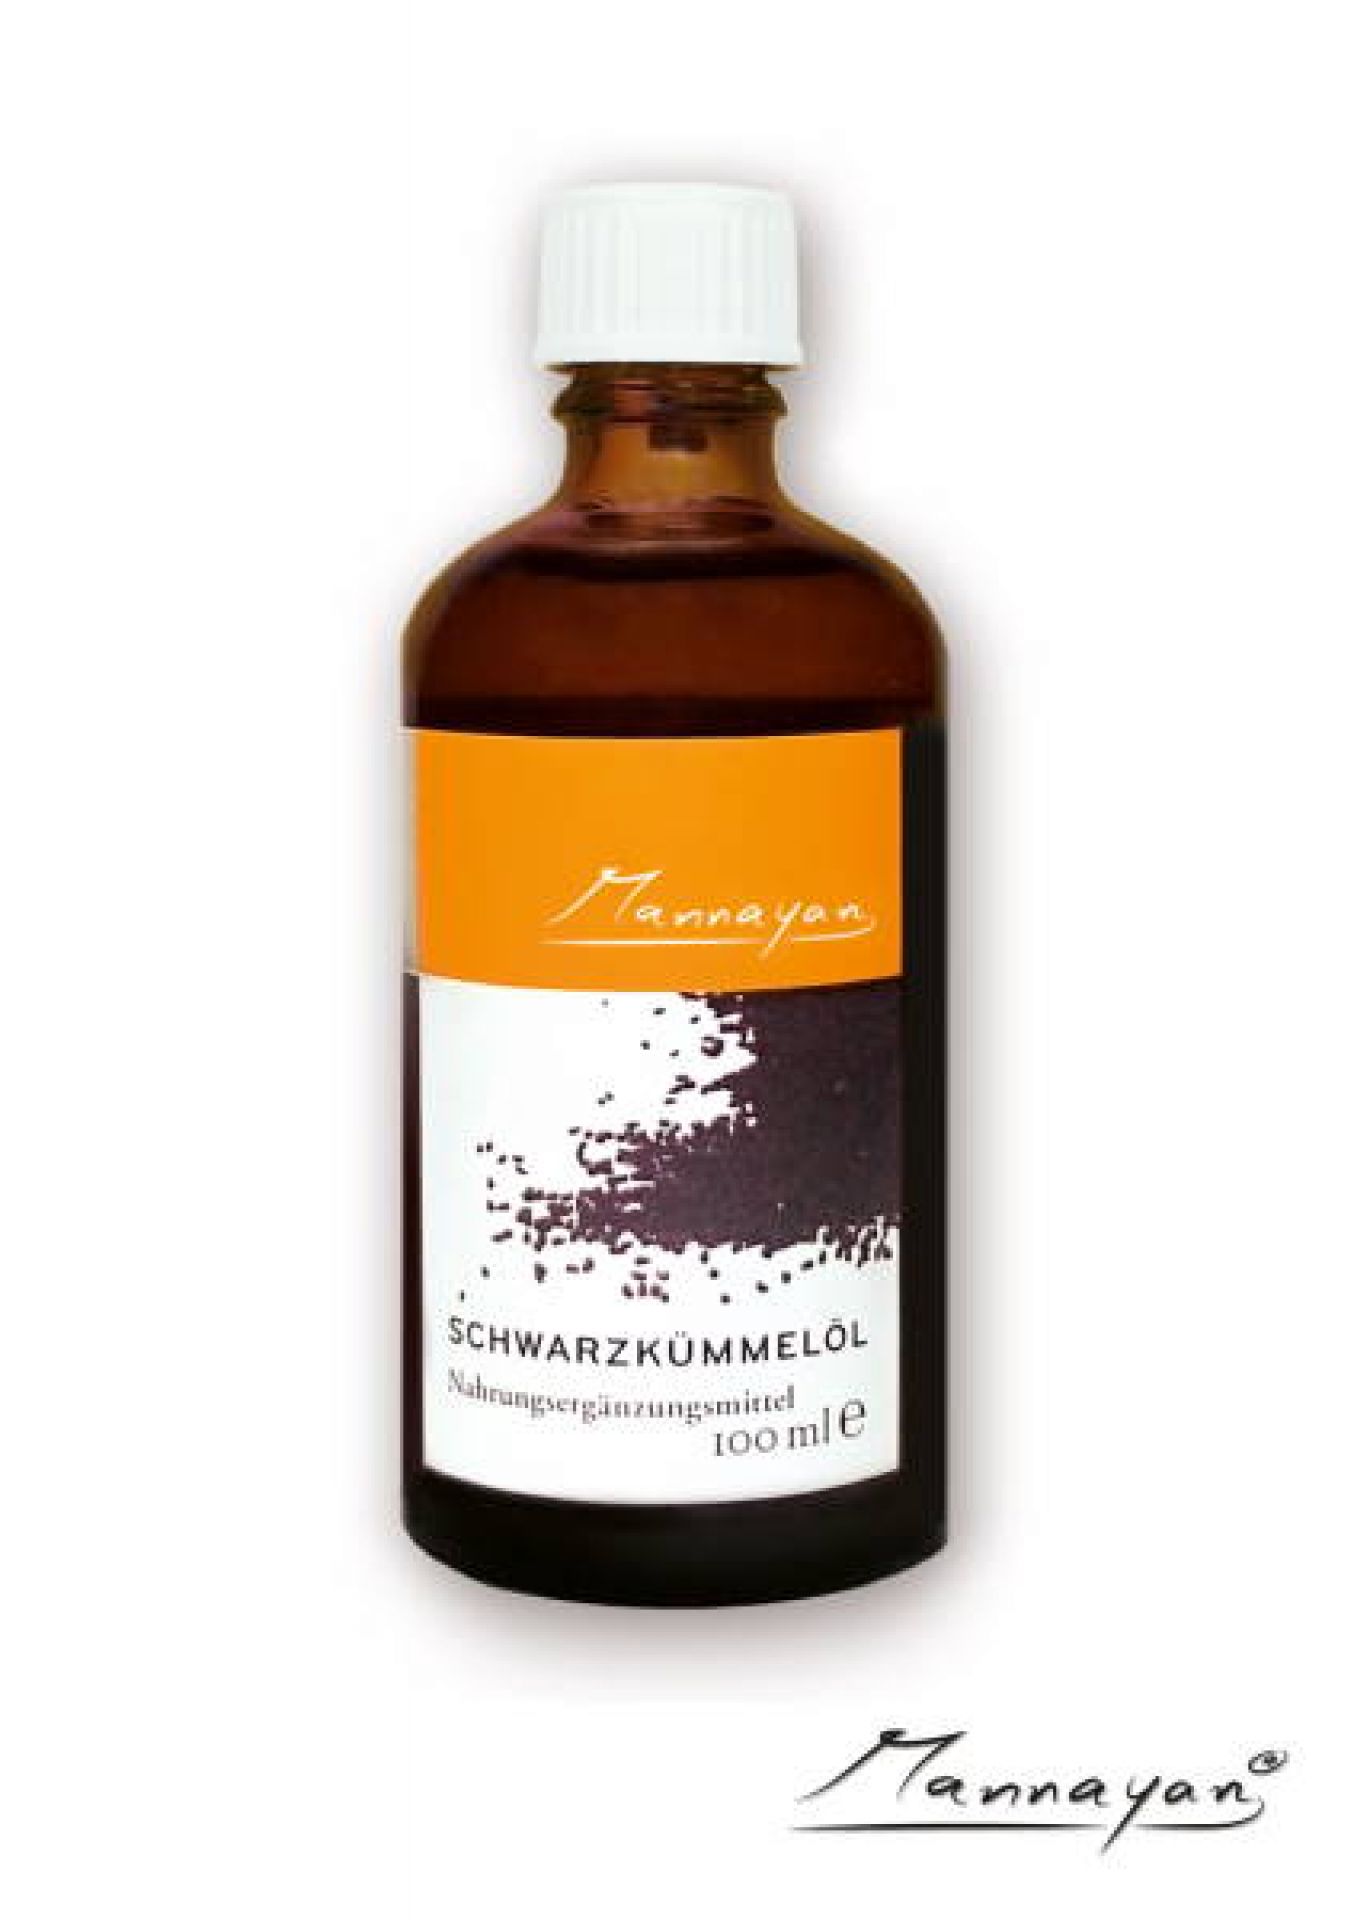 Mannayan Schwarzkümmelöl (olej z czarnuszki) 100 ml